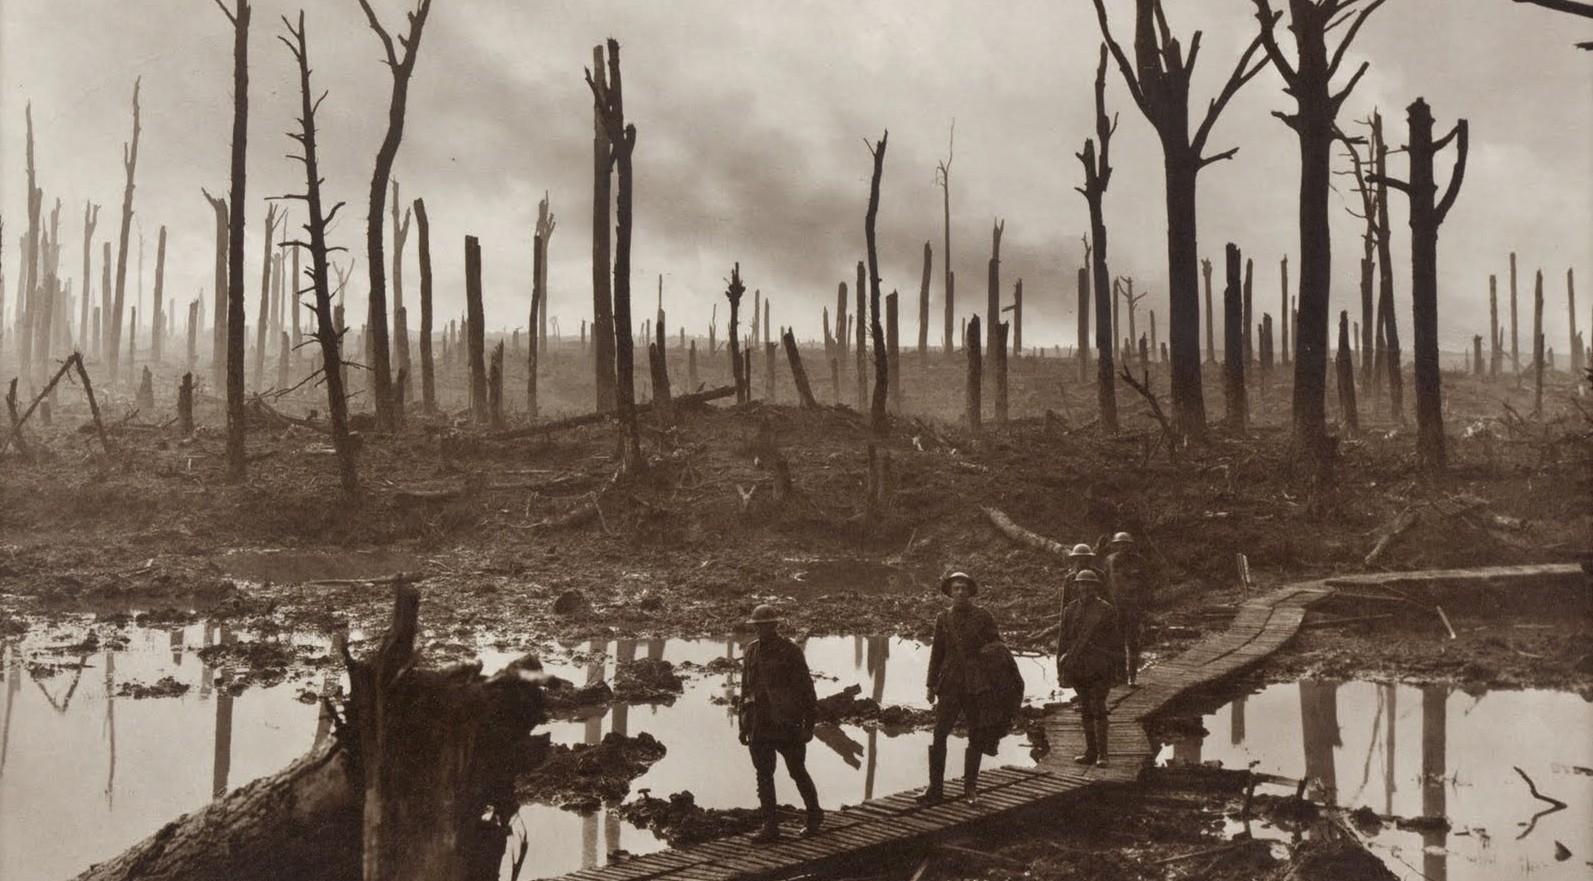 Was World War I necessary?